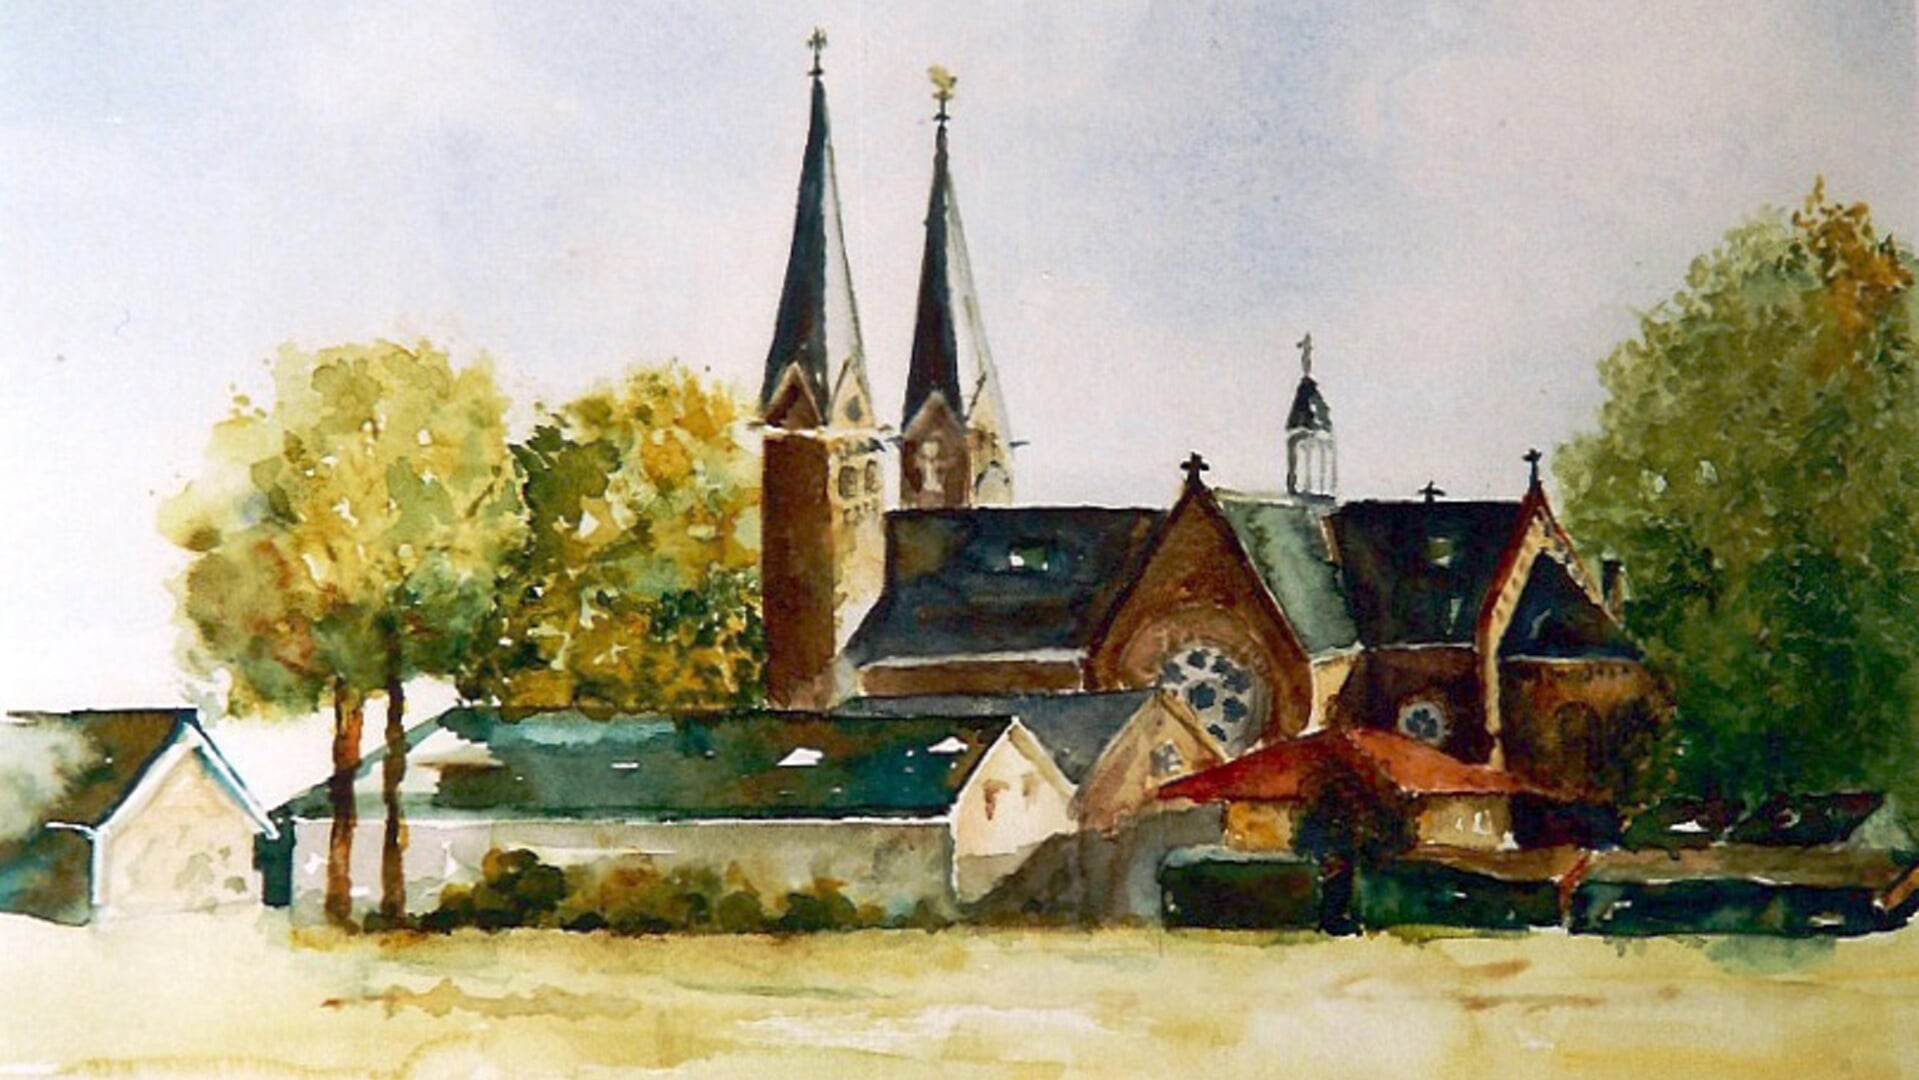 Historisch Duivendrecht in de vorm van een schilderij van Riet Grijm.